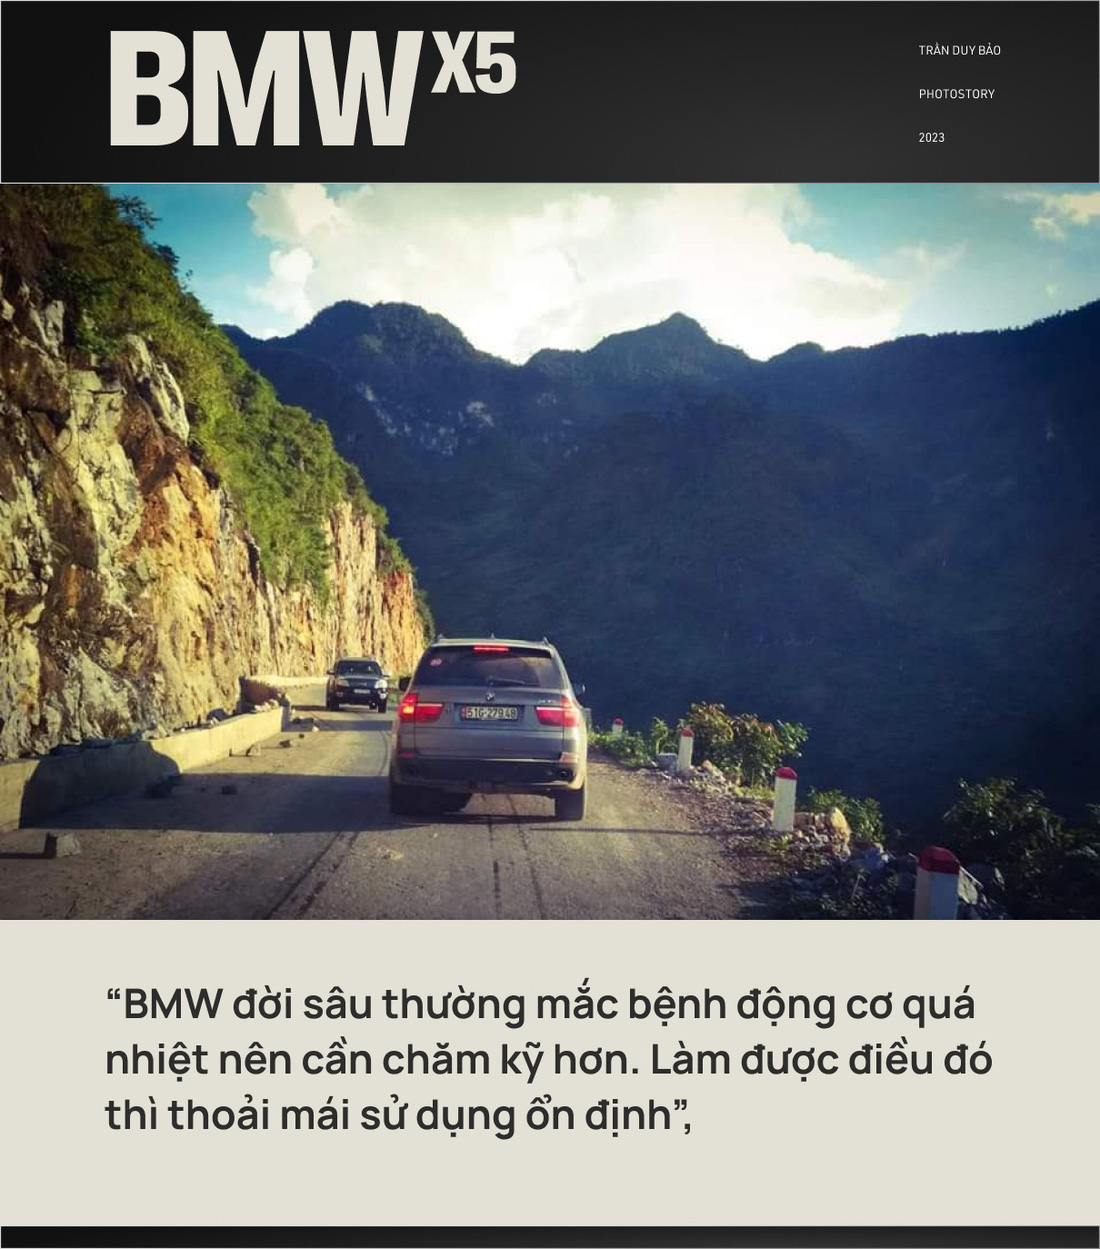 Mang BMW X5 18 năm tuổi xuyên Việt 5 lần, kiến trúc sư nói tâm trạng 'nhảy hố vôi'- Ảnh 4.